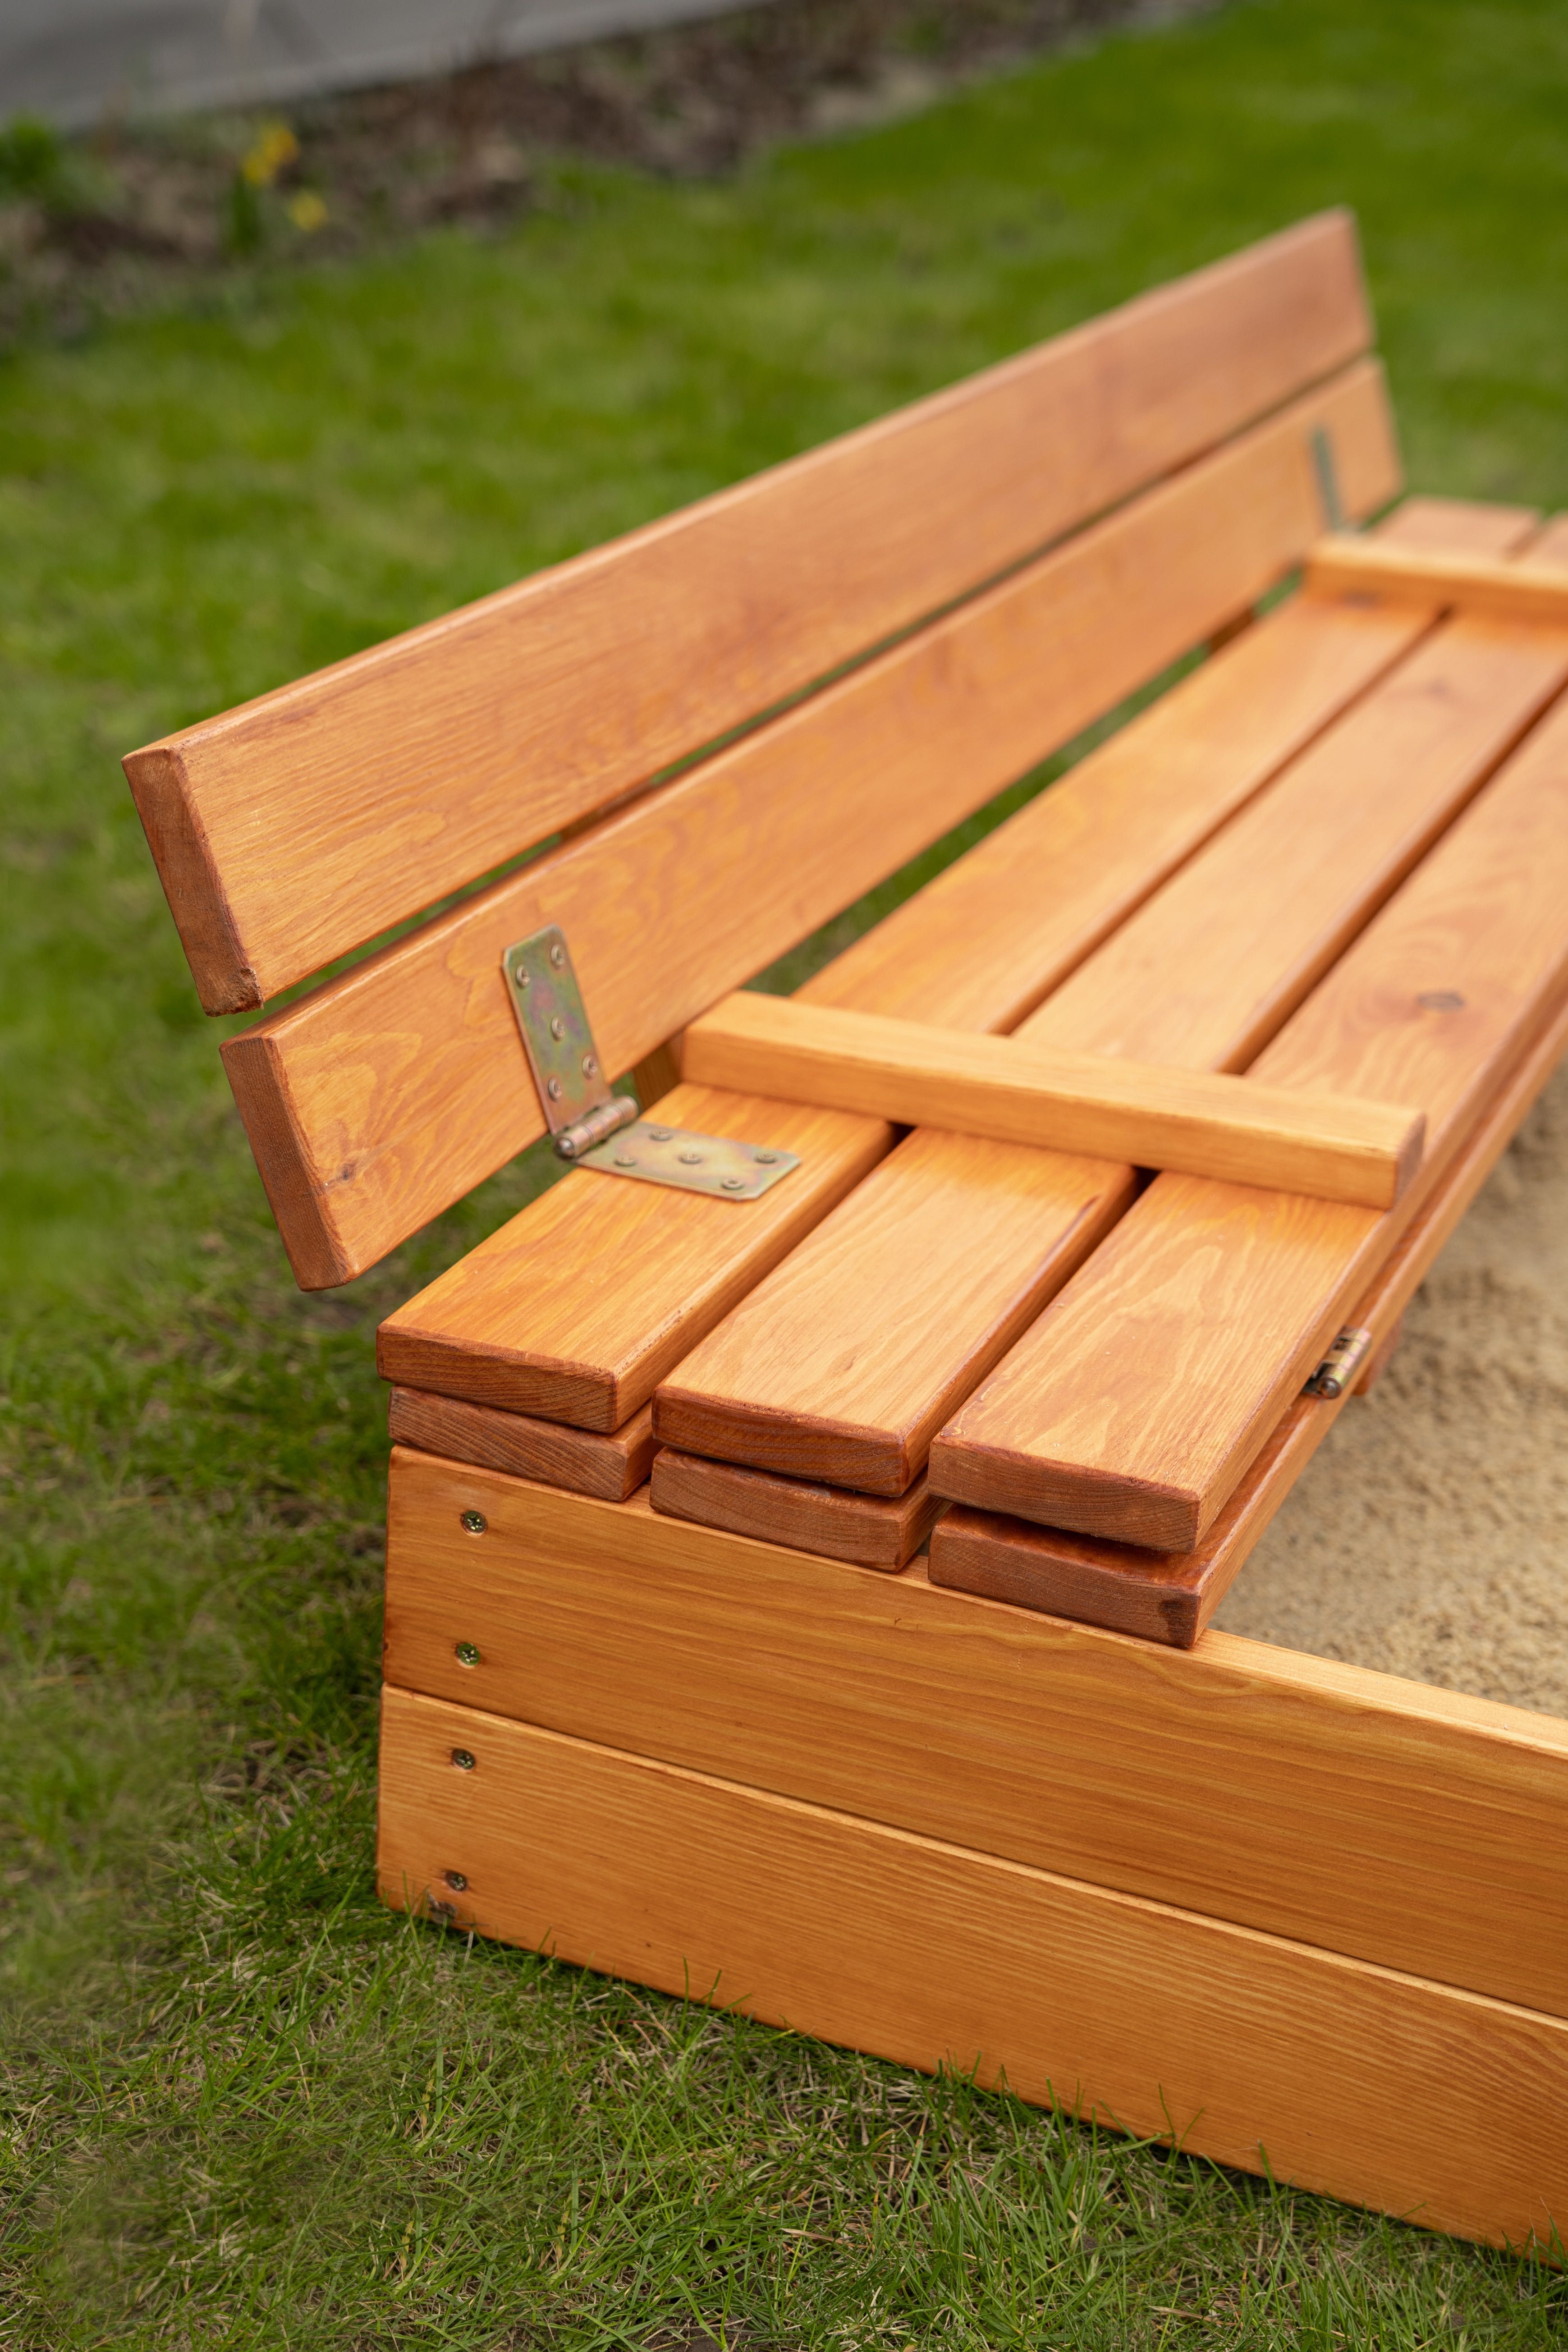 Drewniana piaskownica składana z dwoma siedziskami - wysoka jakość